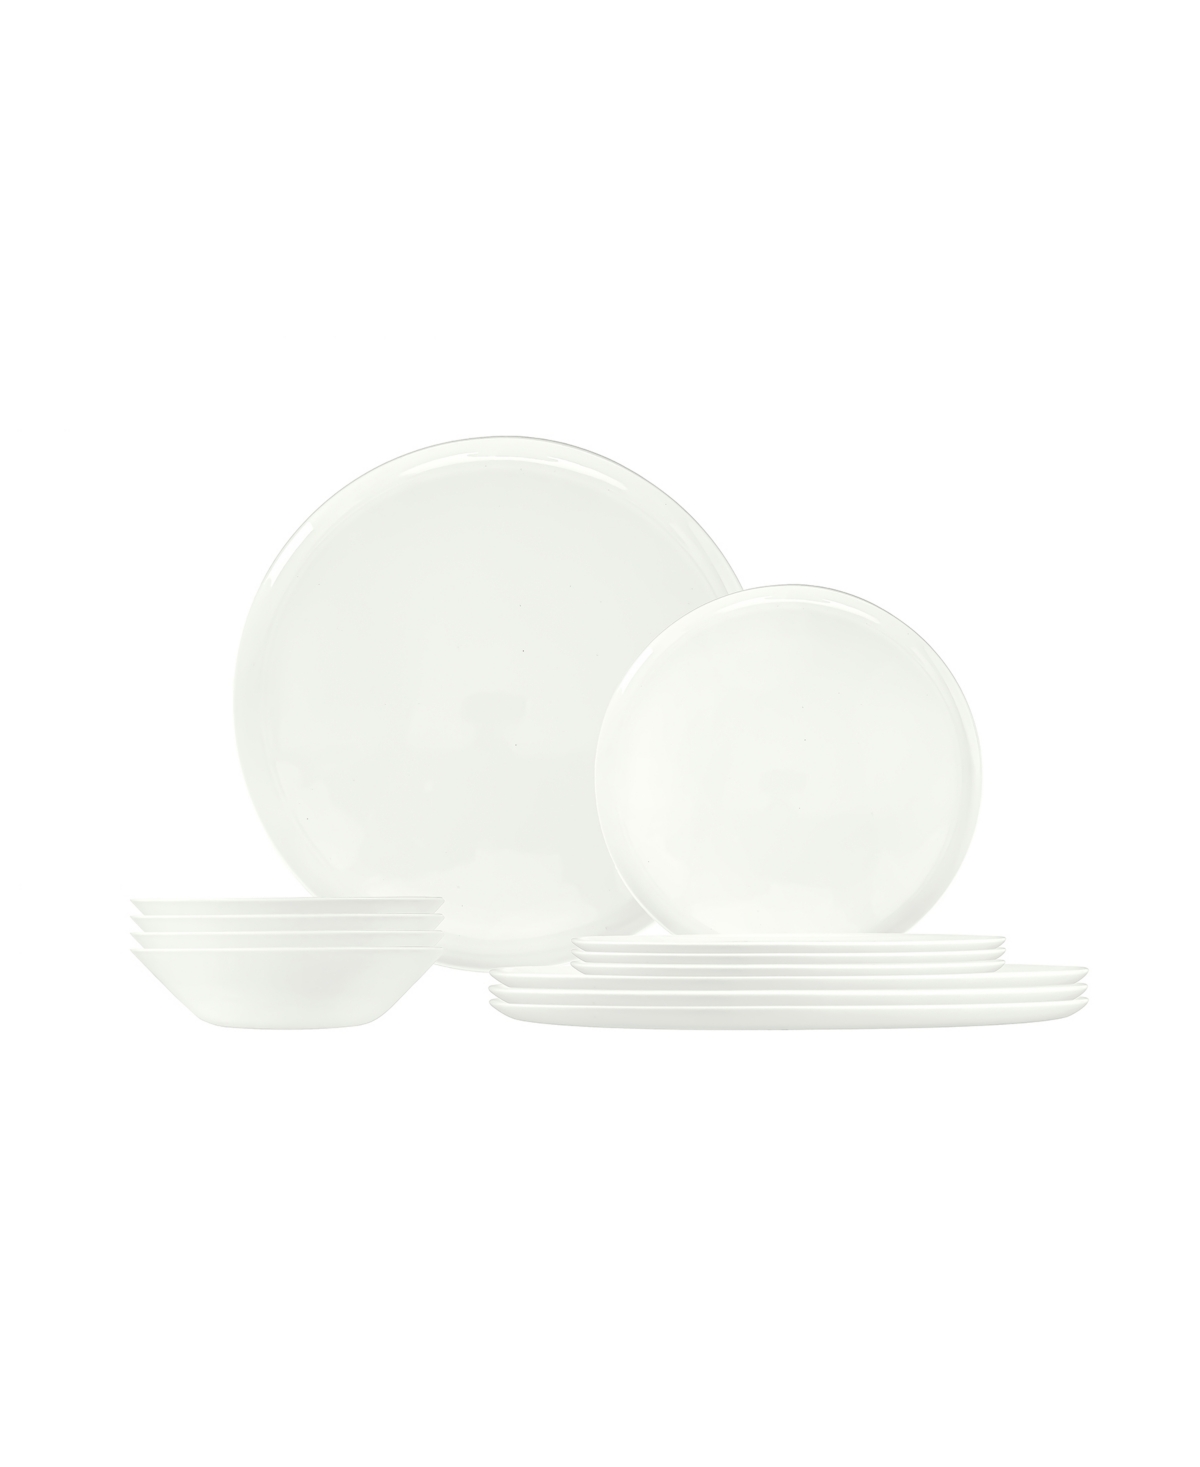 Grazie 12 Piece Dinnerware Set, Service for 4 - White